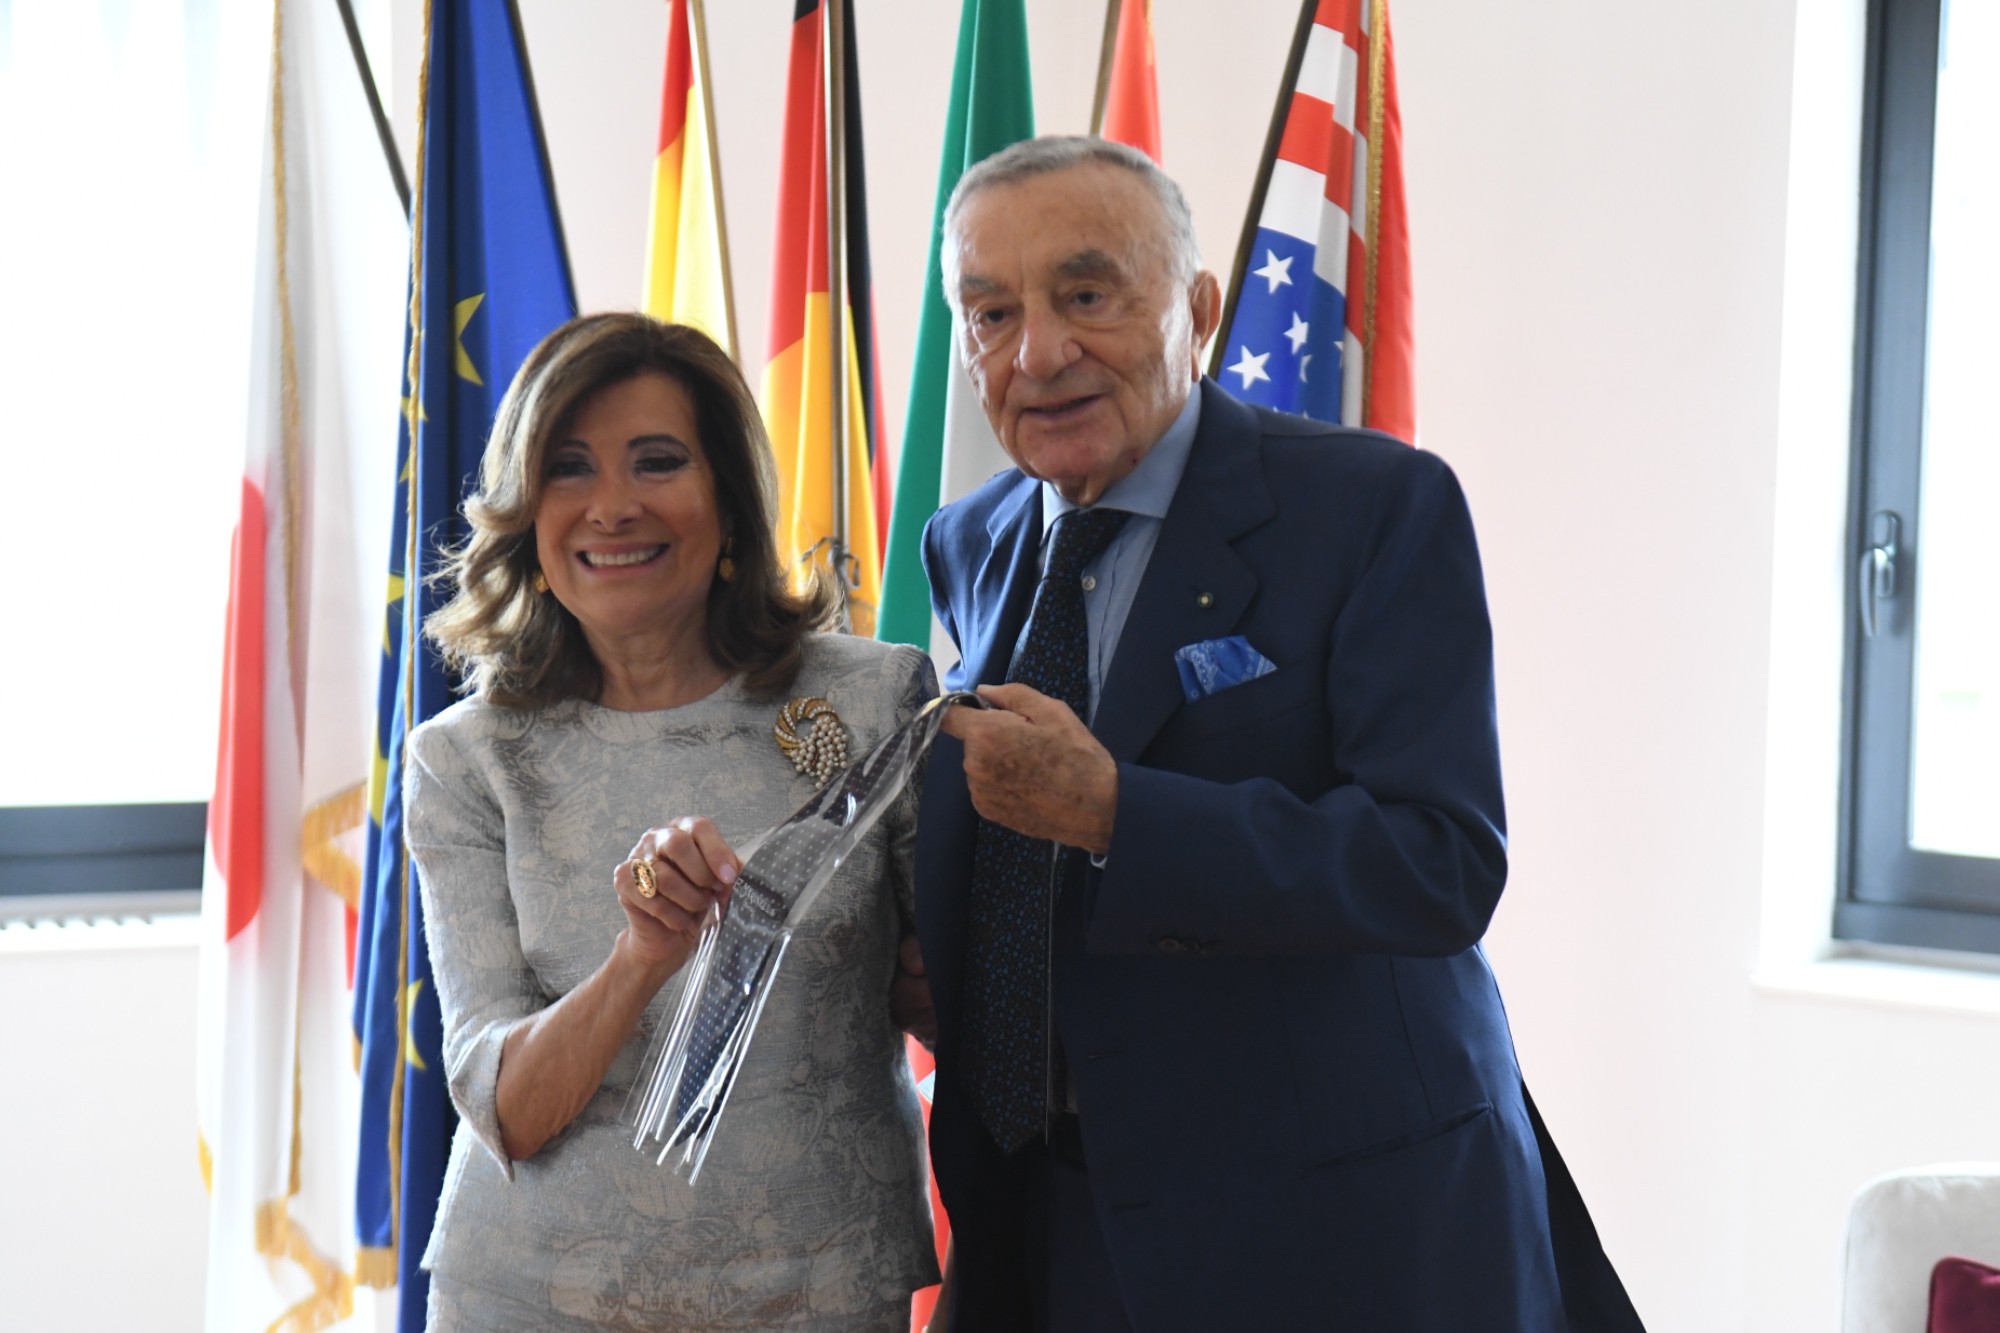 La cravatta del famoso brand napoletano Marinella in regalo dalla presidente del Senato Casellati all’editore, Cavaliere del Lavoro Pippo Marra (Foto Adnkronos)